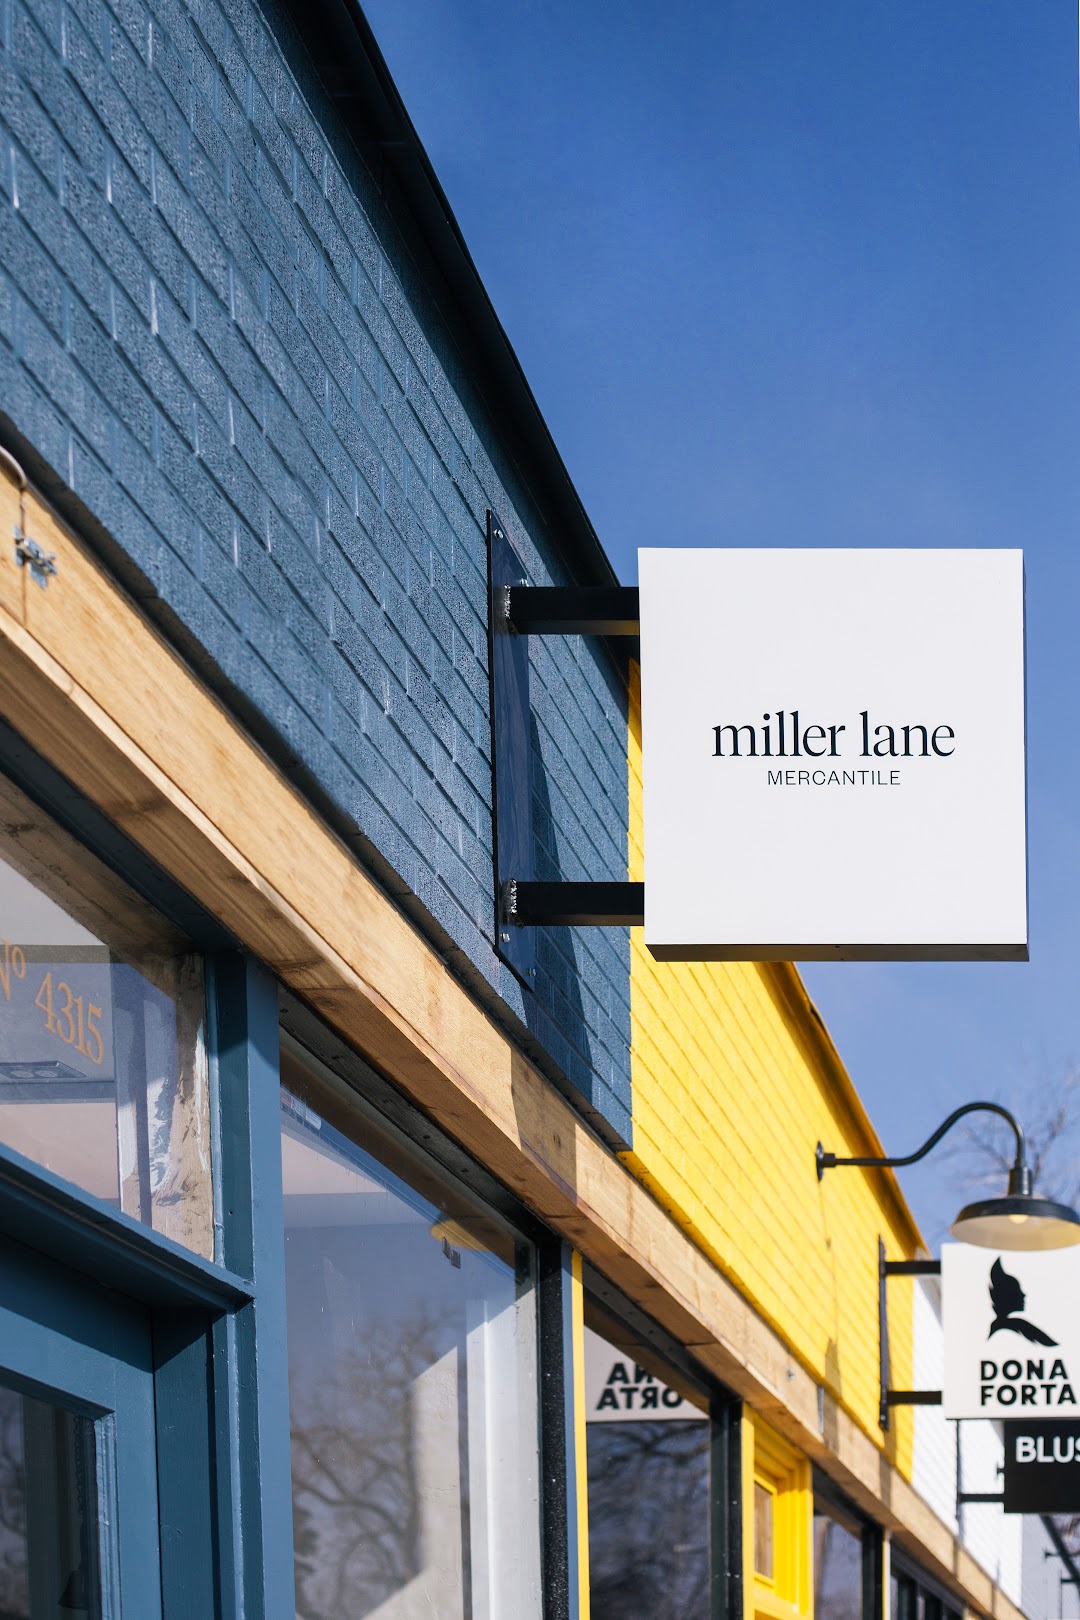 Miller Lane Mercantile